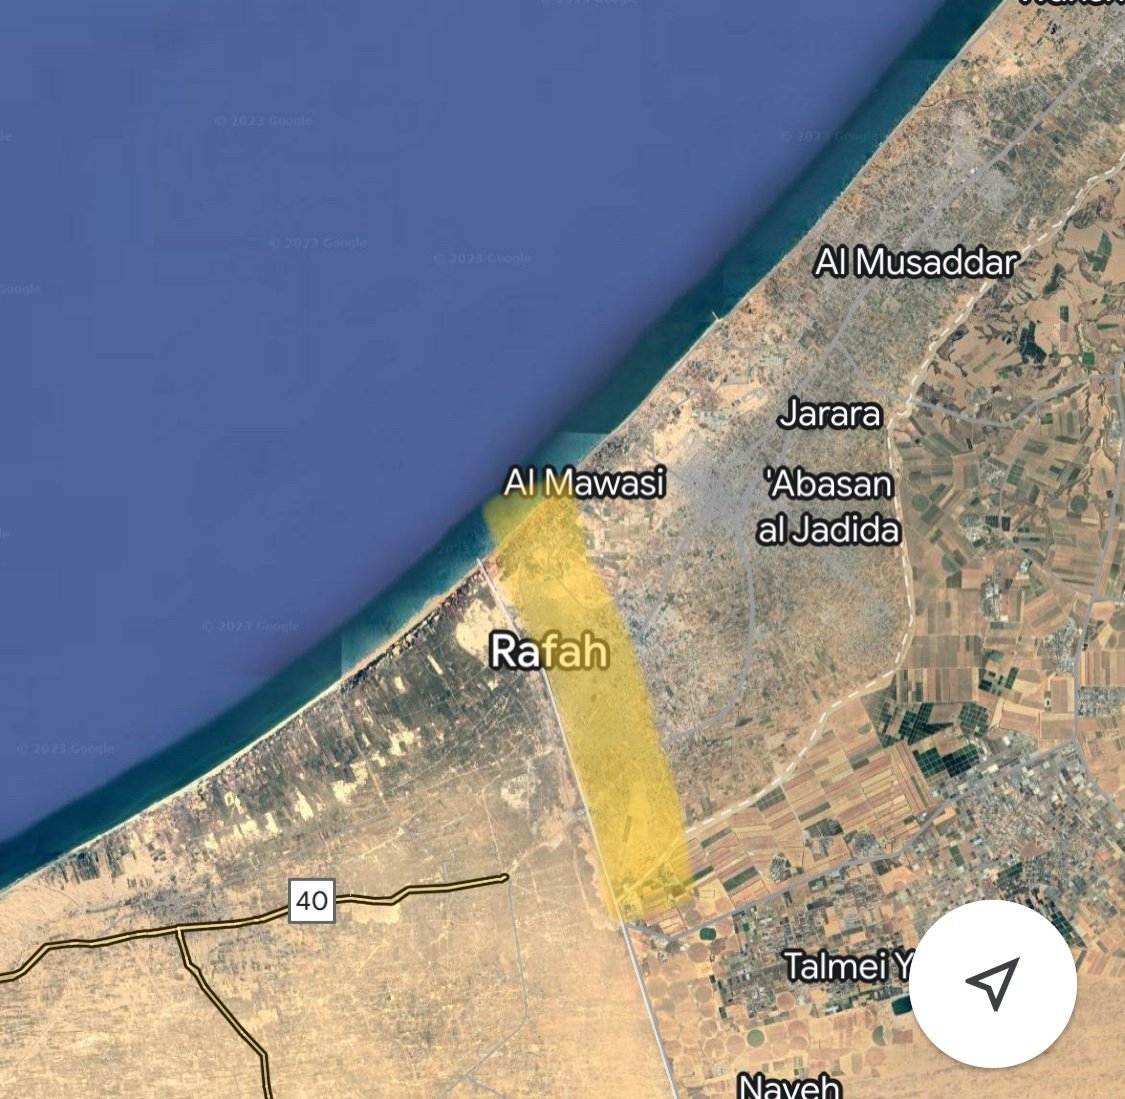 A mi hay una cosa que me tienen que explicar.
Vamos a ver, este mapa muestra la frontera entre la Franja de Gaza y Egipto donde existe un paso fronterizo de unos 12 km que se llama el paso de Rafah.
Israel no lo puede bloquear, ya que no tiene acceso a él, así que Gaza tiene esos